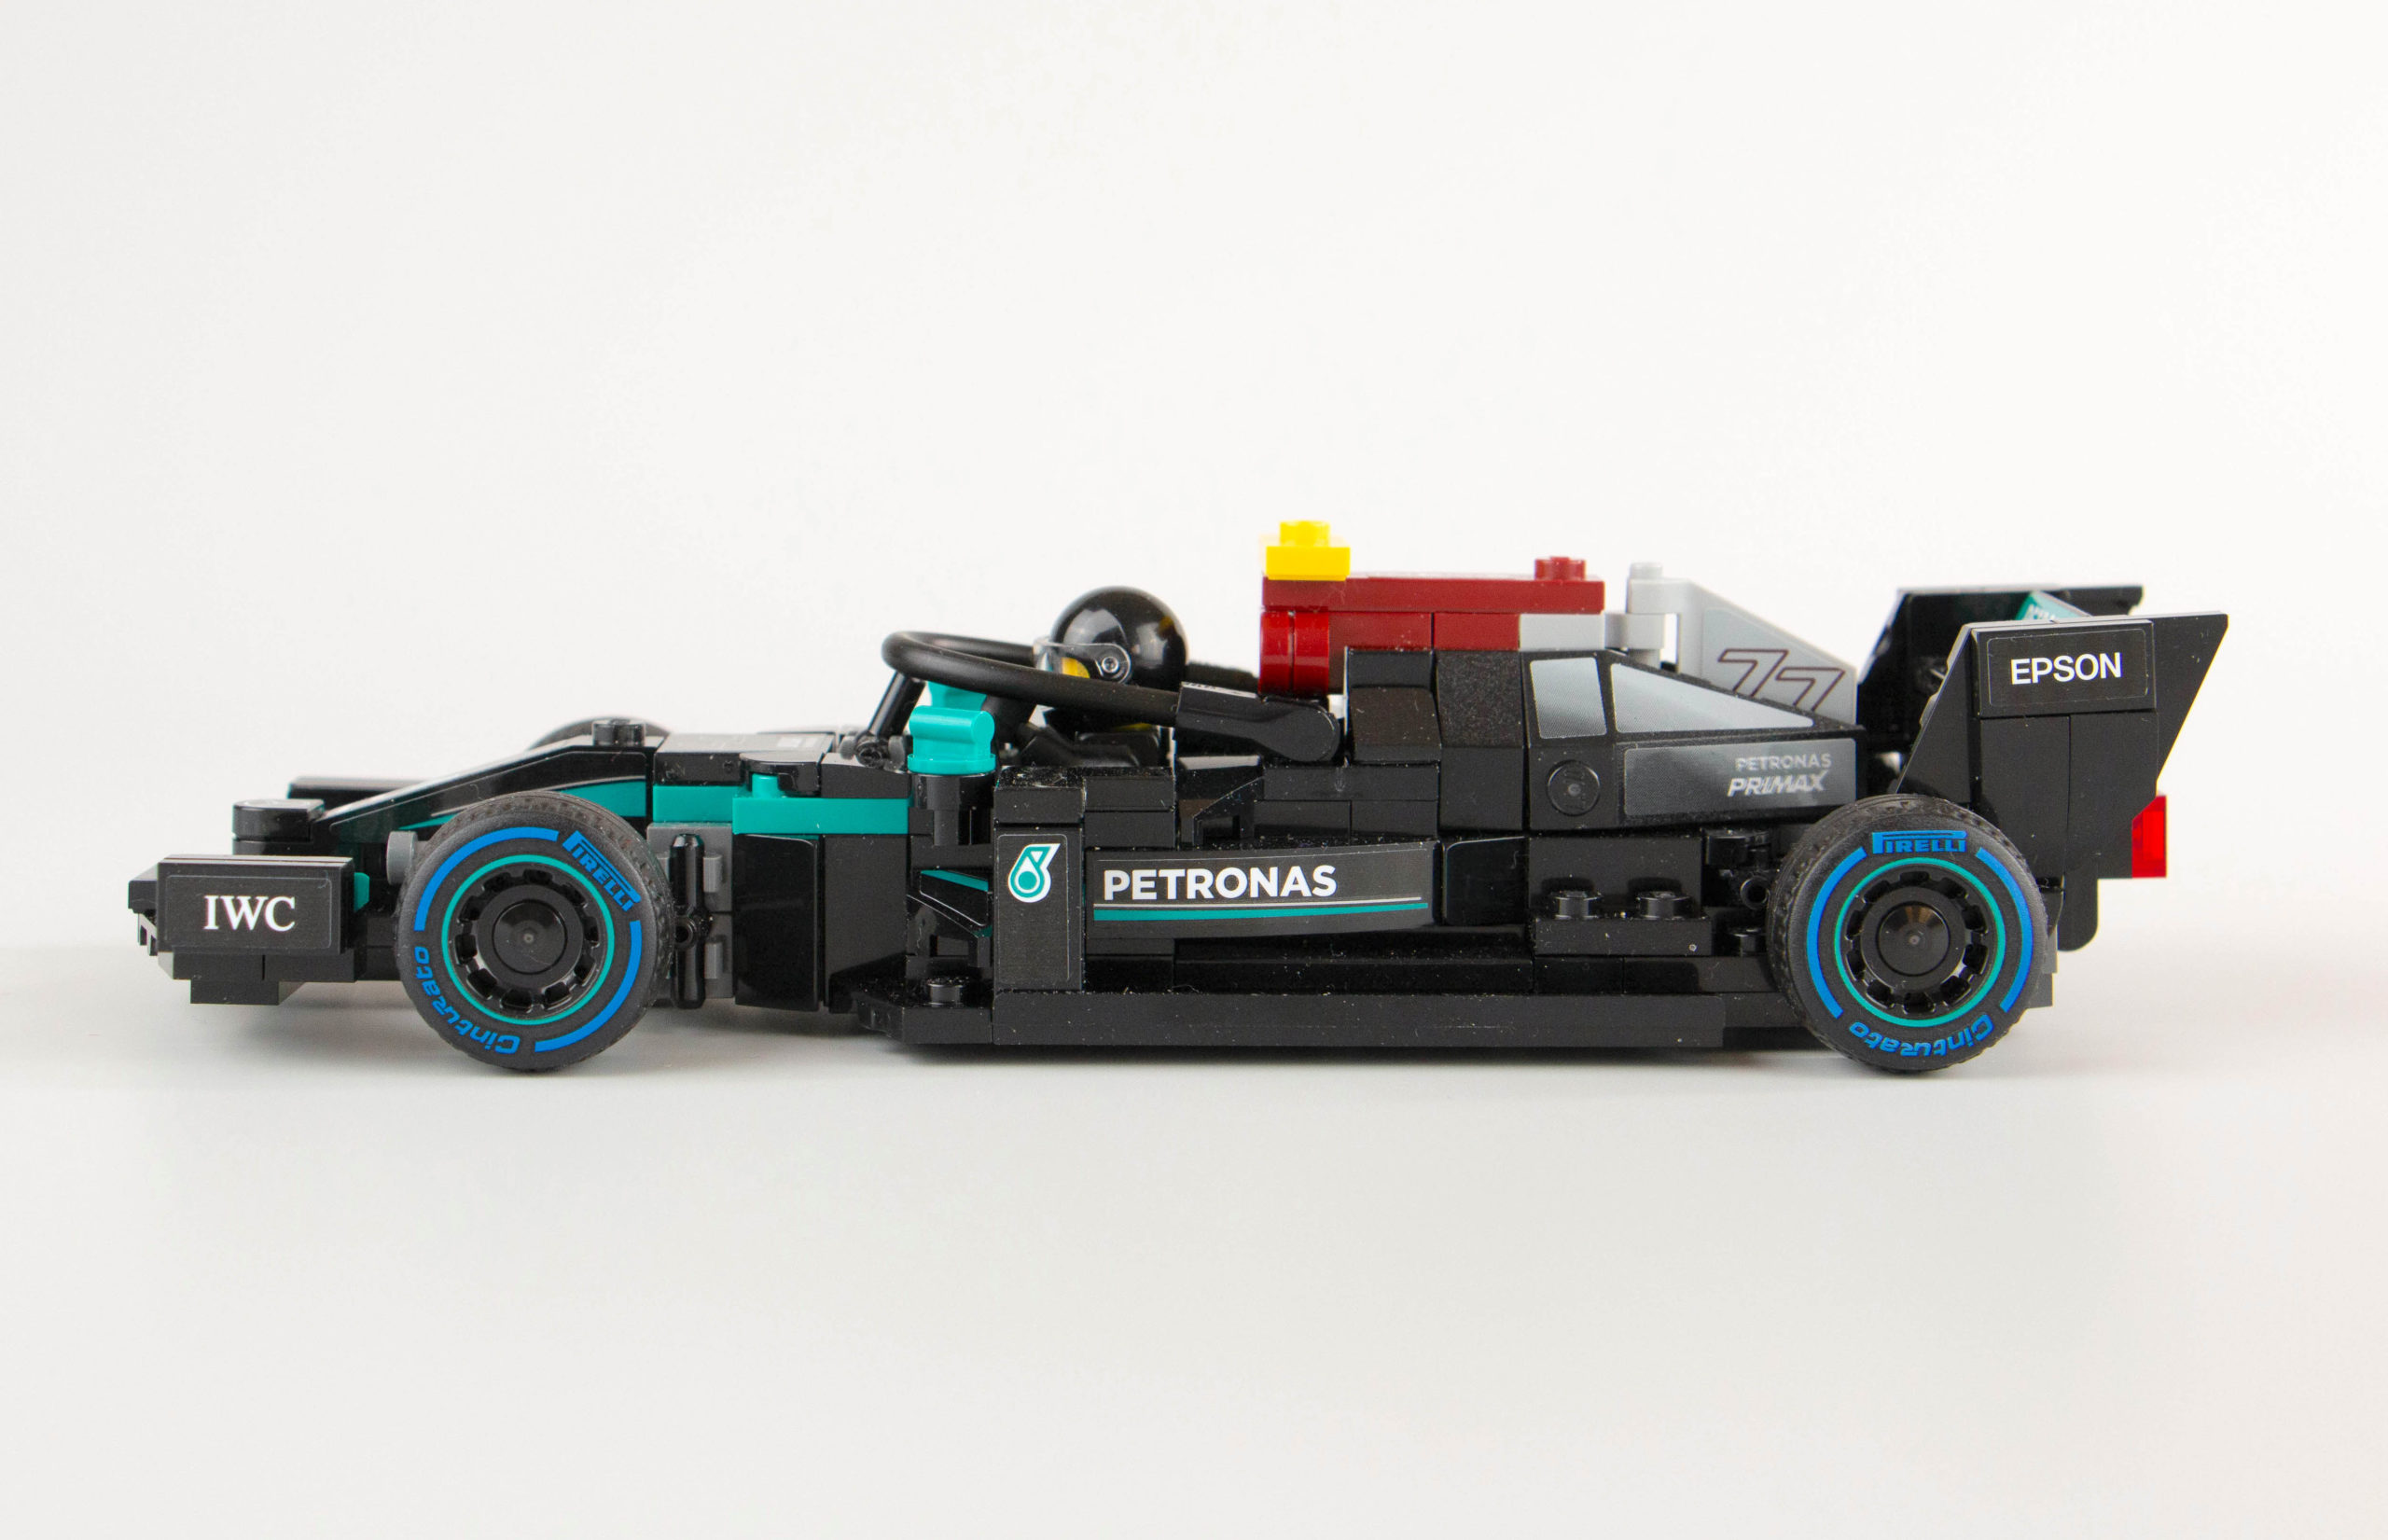 LEGO Ideas Le projet de Formule 1 s'accélère grâce aux qualifications